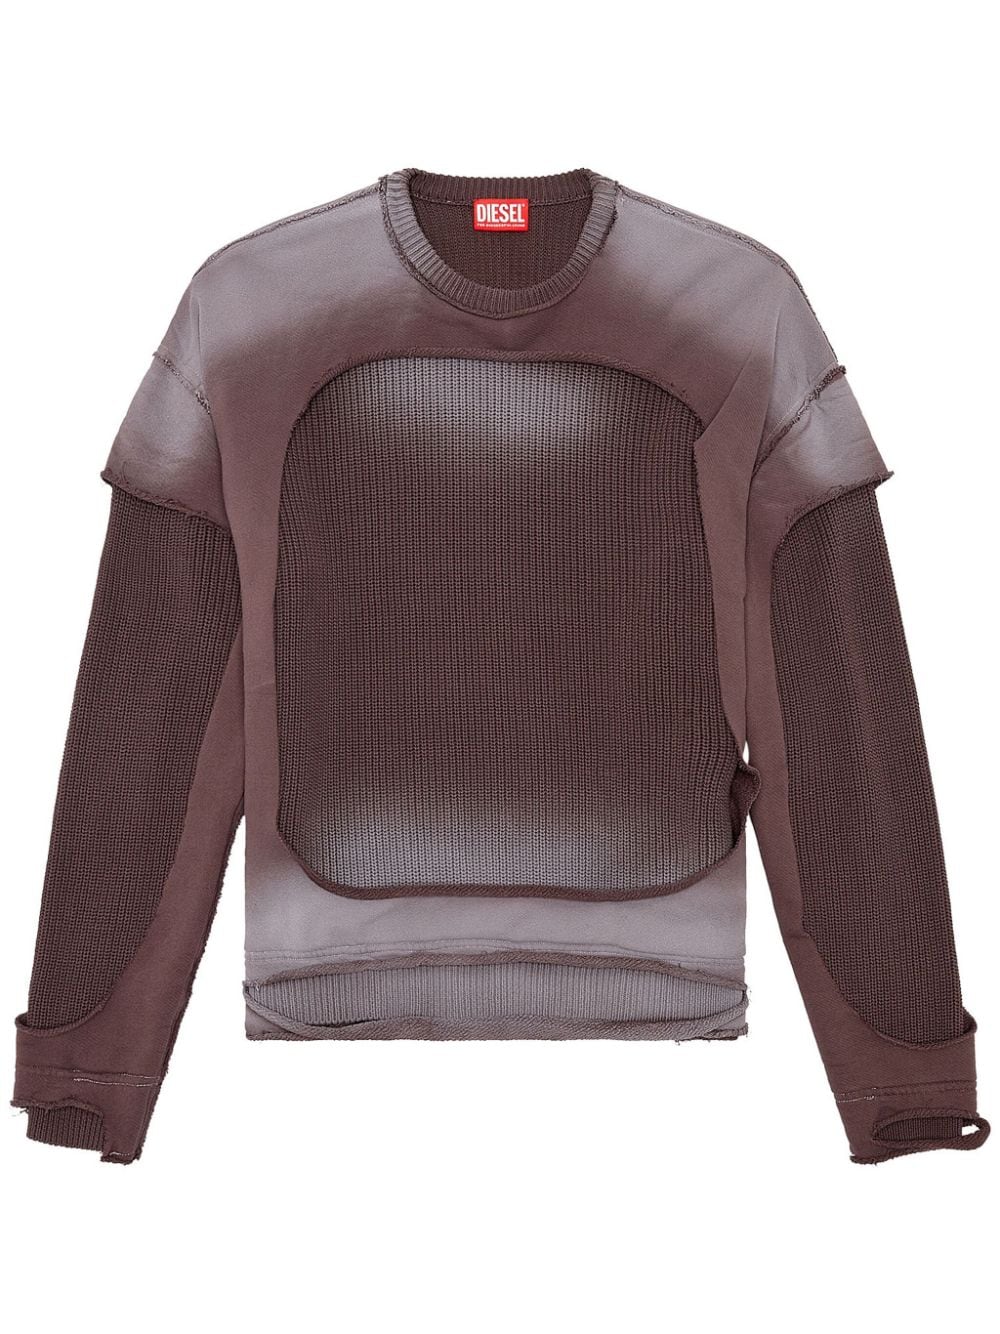 Diesel K-Osbert Sweatshirt in Distressed-Optik - Grau von Diesel